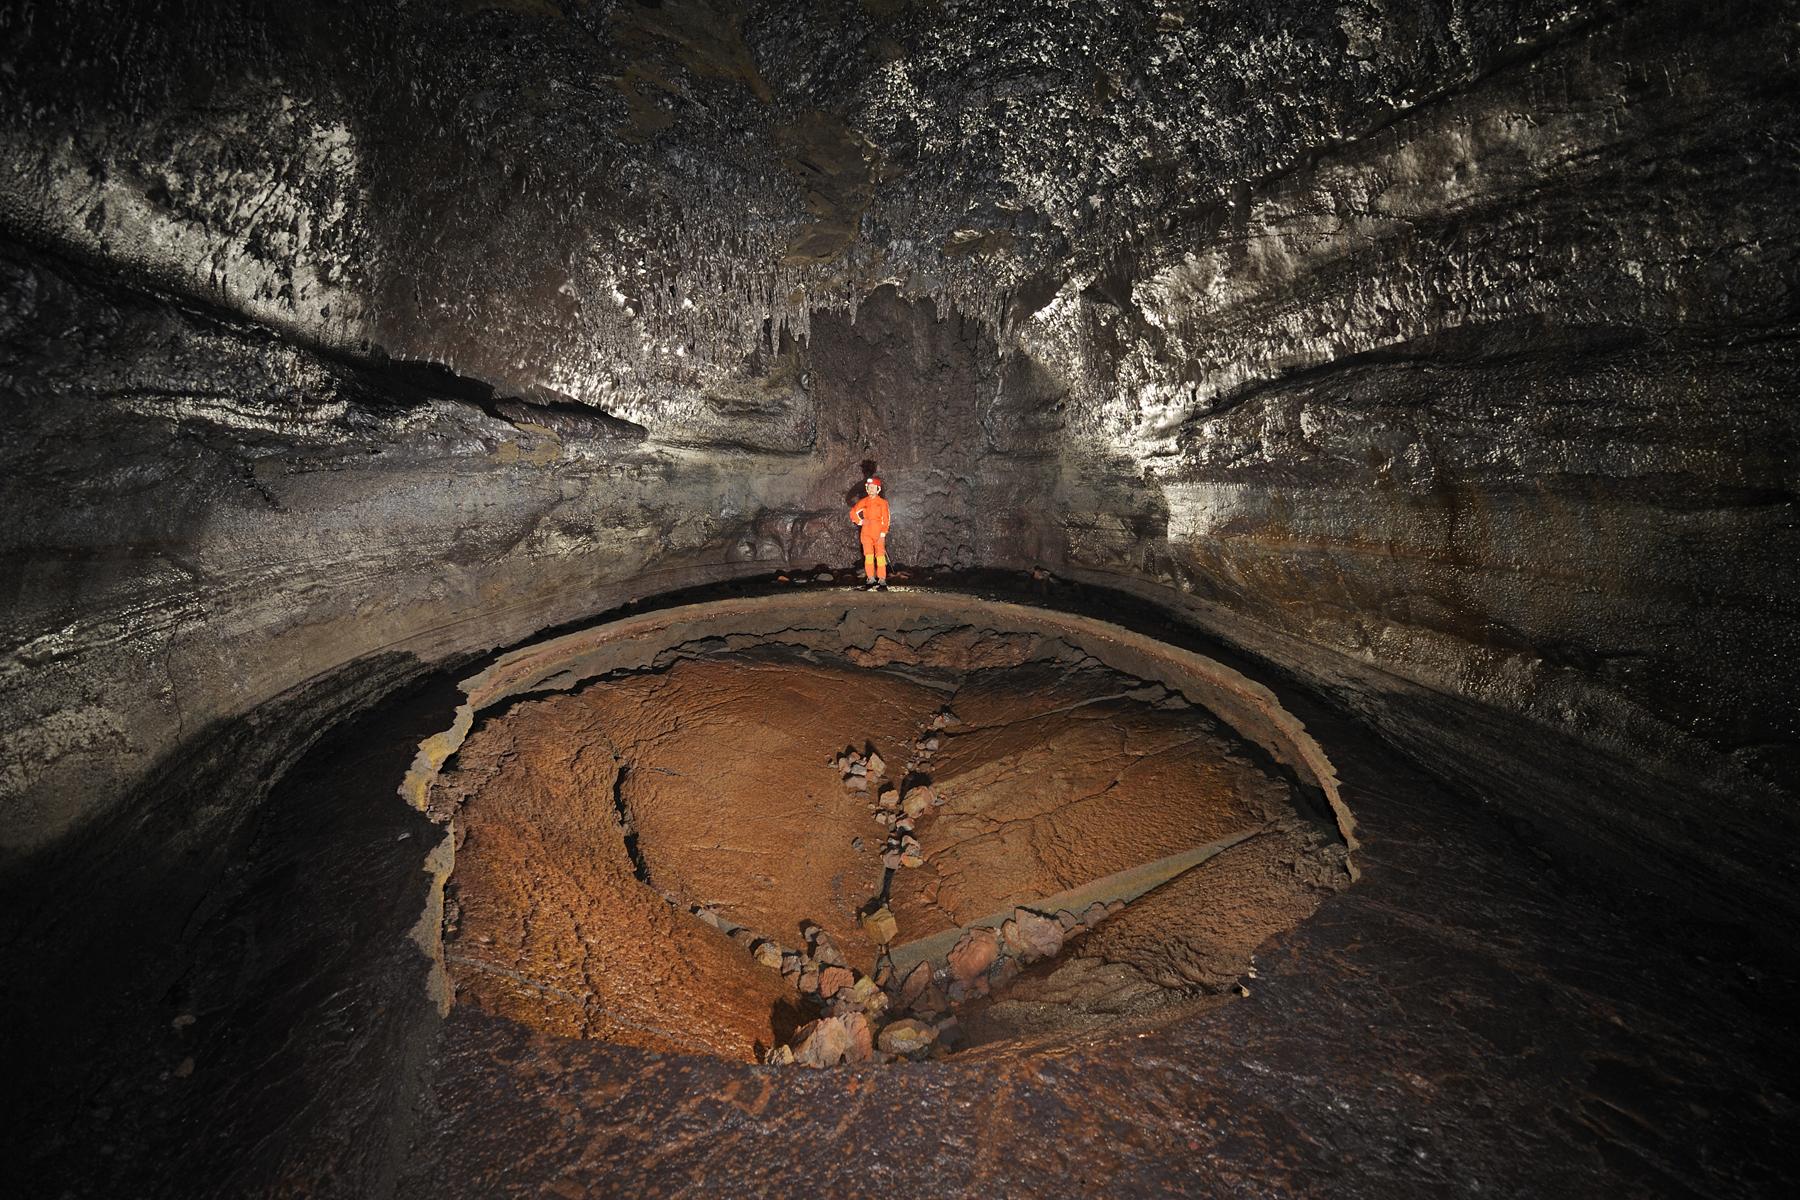 Hawaï (USA) - Tube de lave - Kazamura cave - Bulle effondrée dans plancher